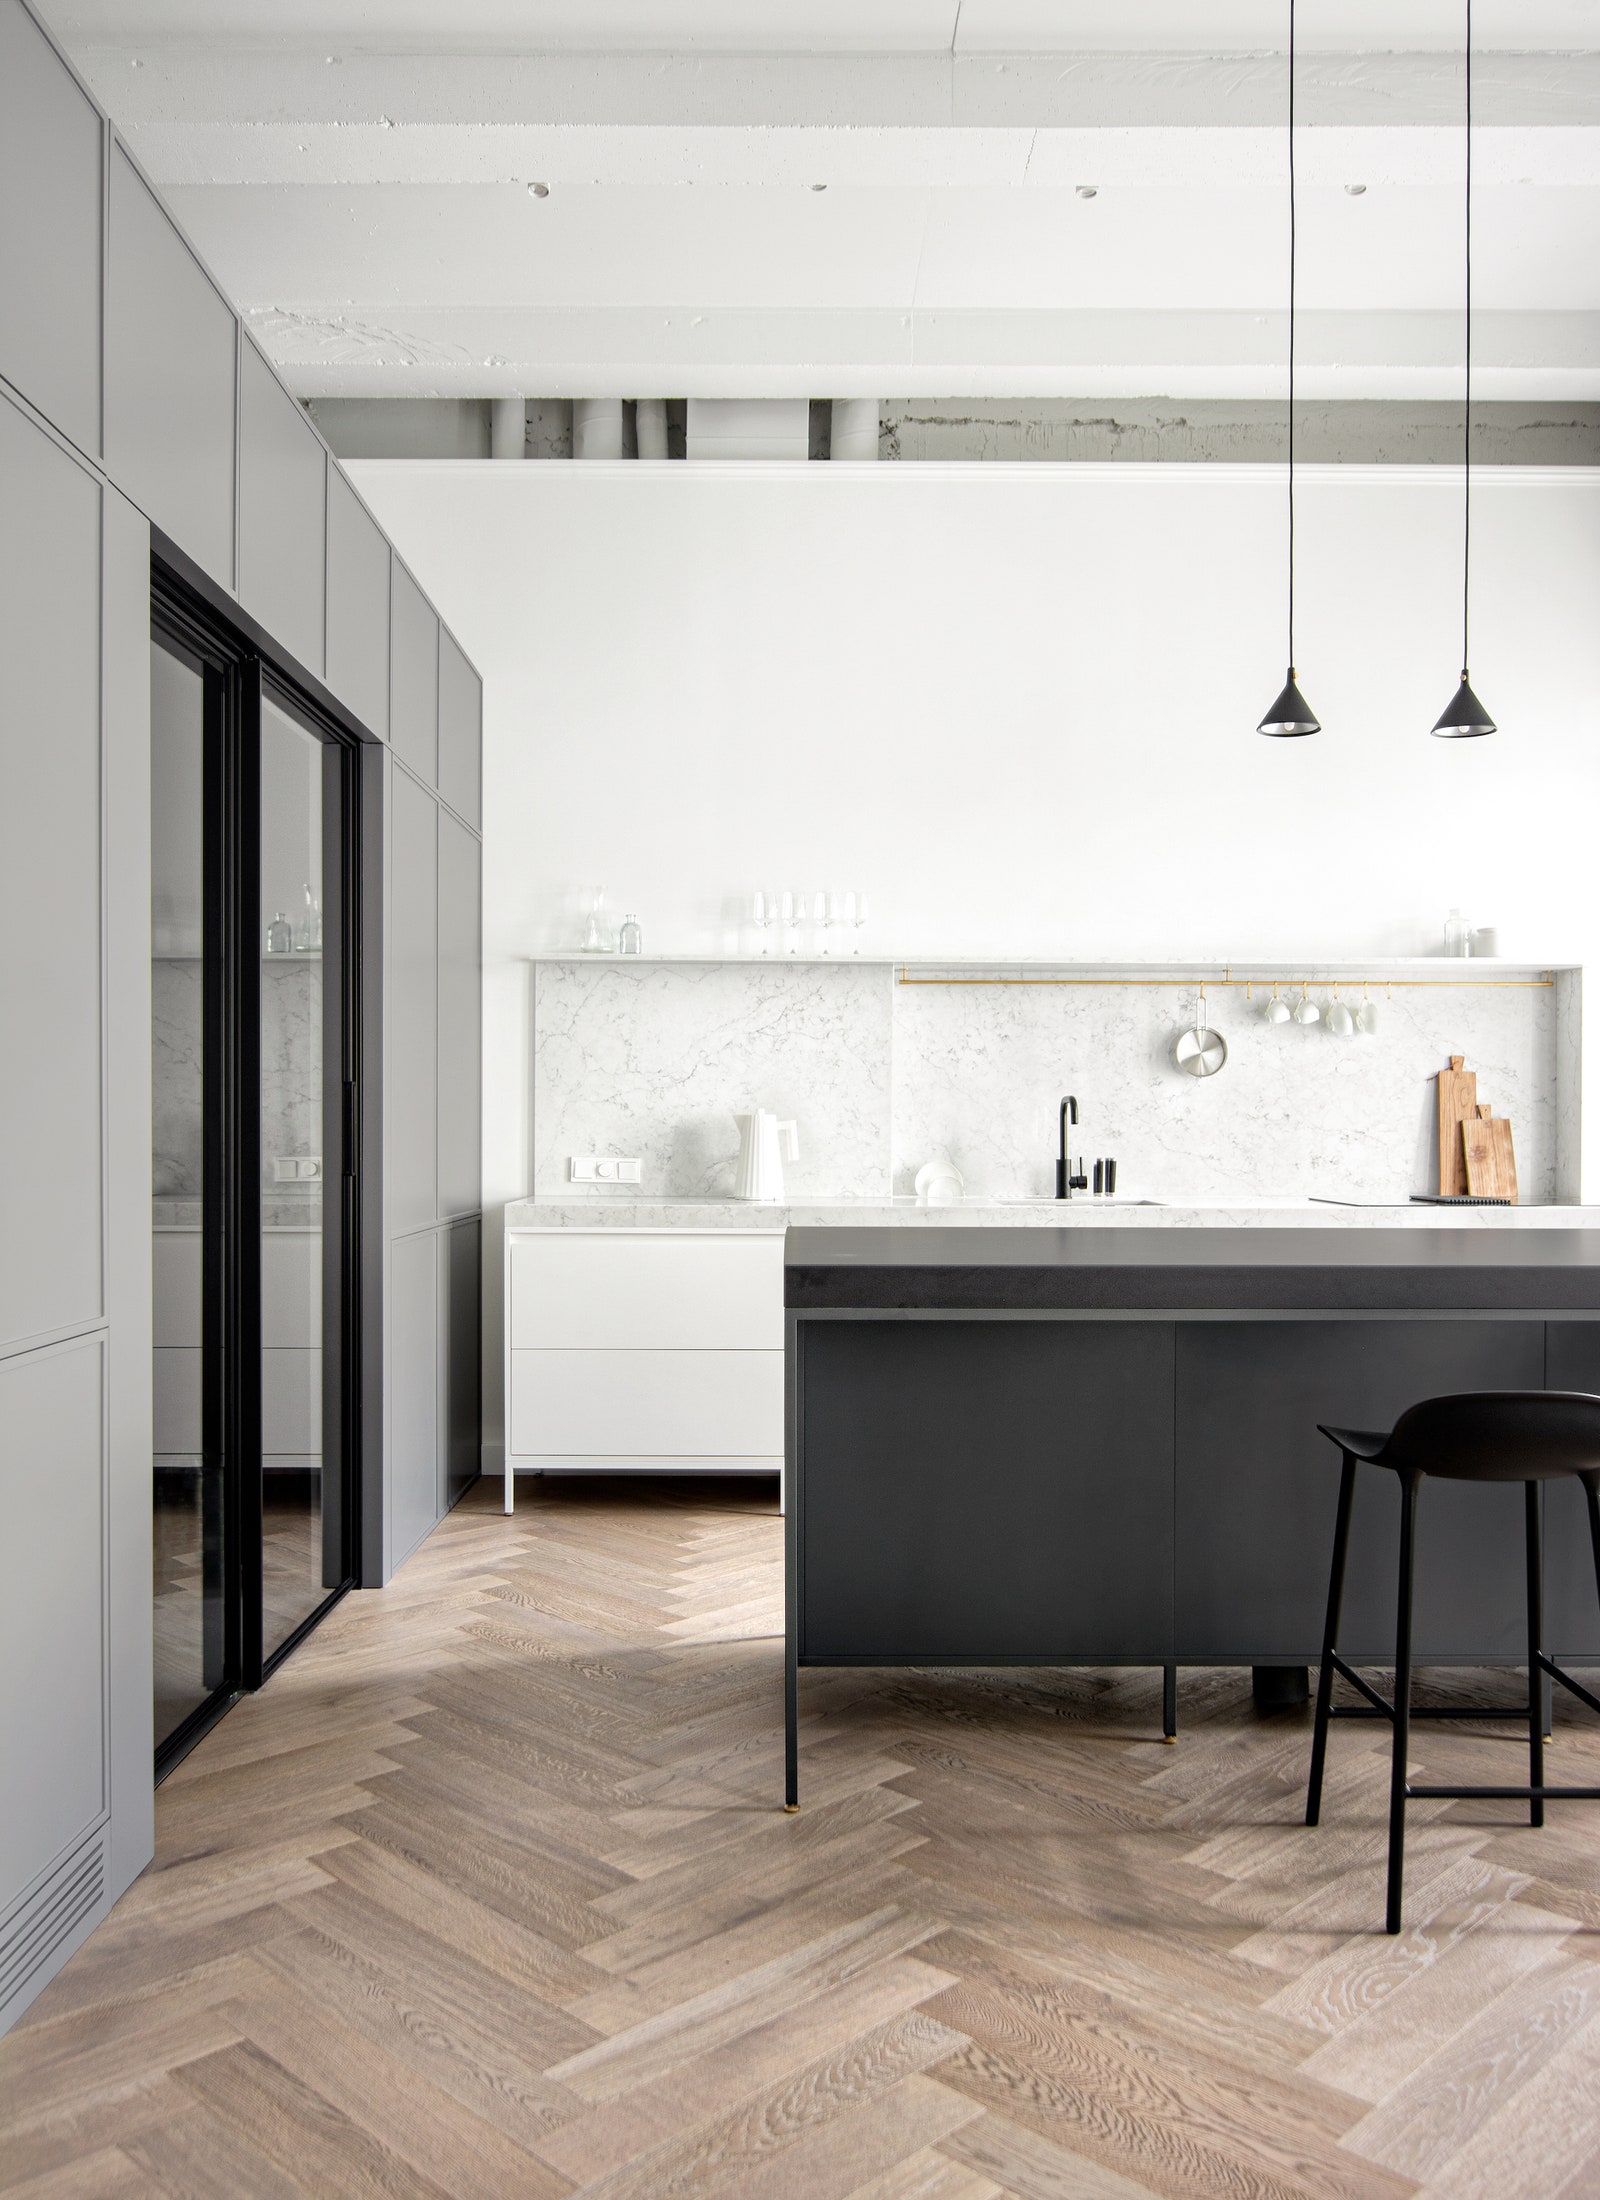 Кухонный гарнитур и остров сделаны в мастерской “Твой Цехъ” по эскизам дизайнеров.